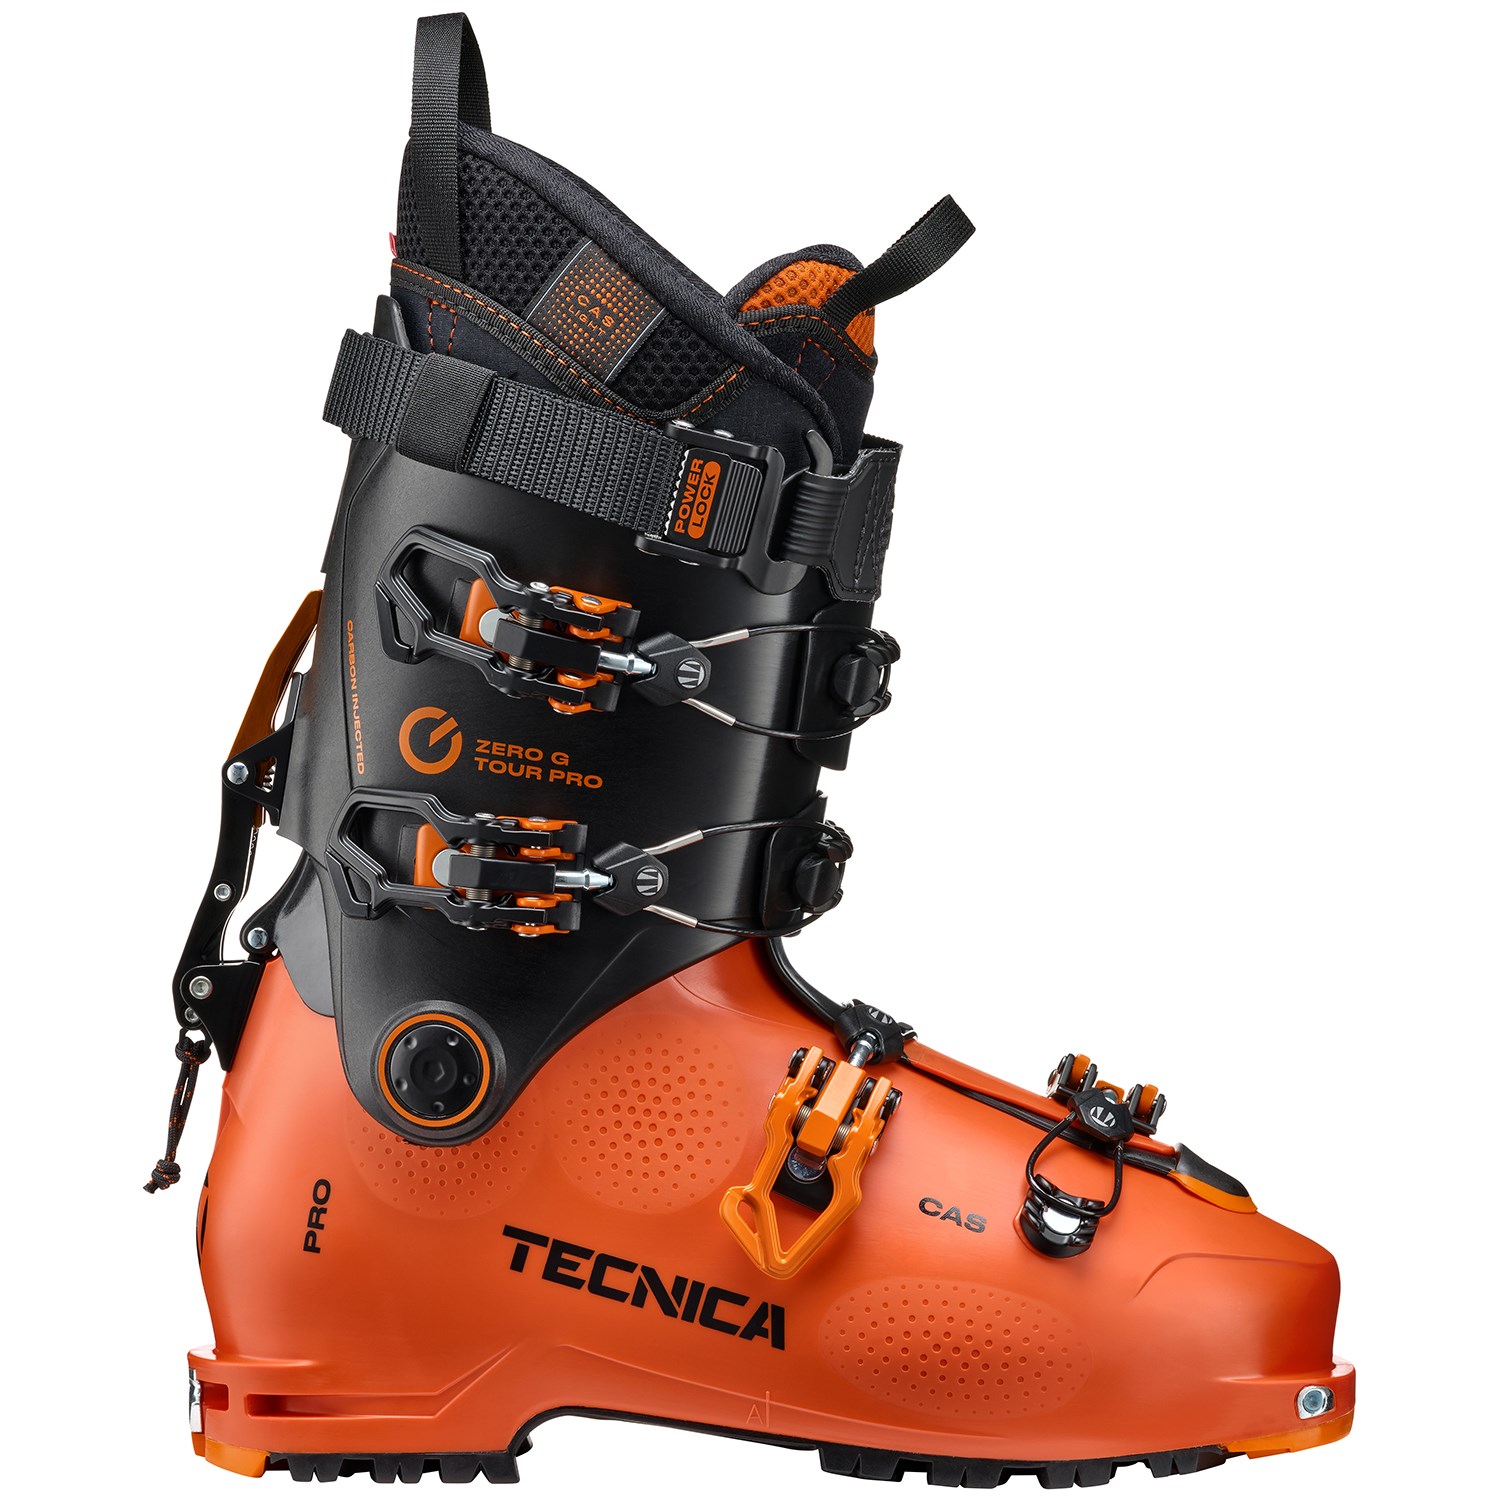 het einde Viool kapsel Tecnica Zero G Tour Pro Alpine Touring Ski Boots 2023 | evo